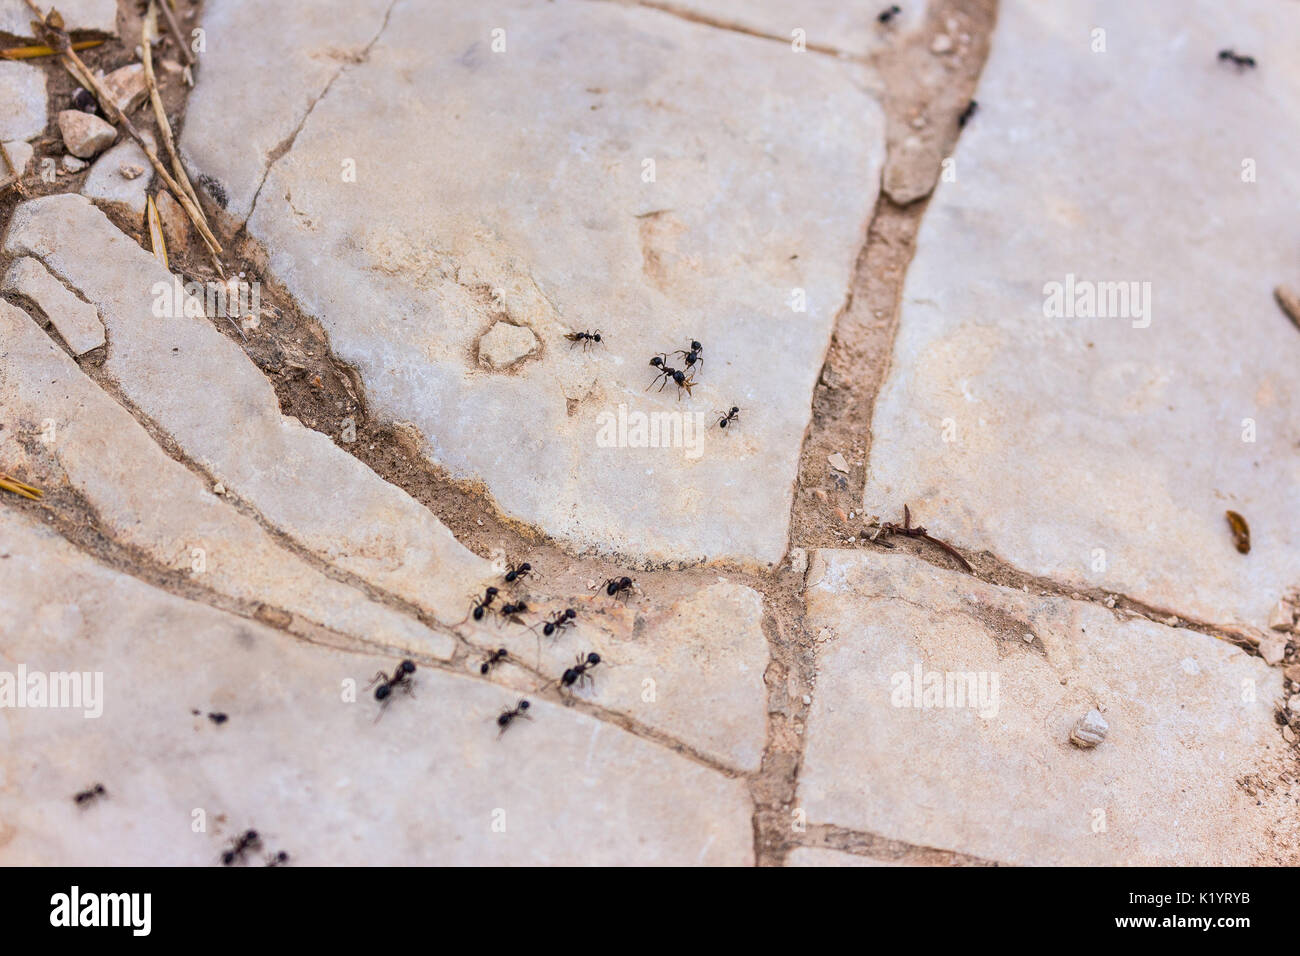 Formicidae ameise insekt Trail sammeln Lebensmittel für die Kolonie auf weißen Steine in der mediterranen Natur Stockfoto